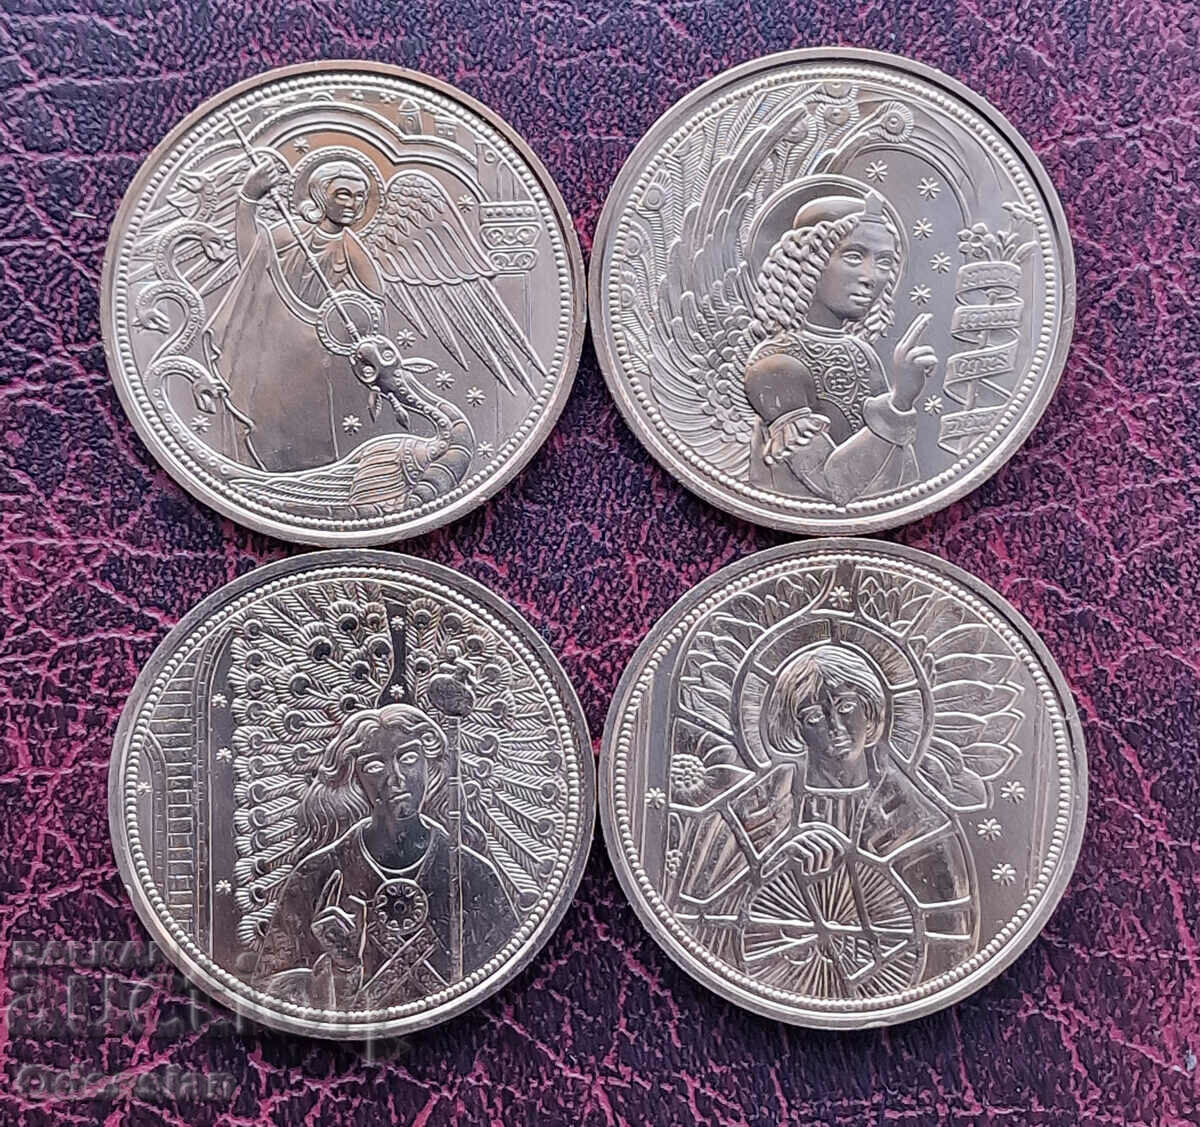 Αυστρία • Σετ κερμάτων 4 ευρώ "GUARDIAN ANGELS"